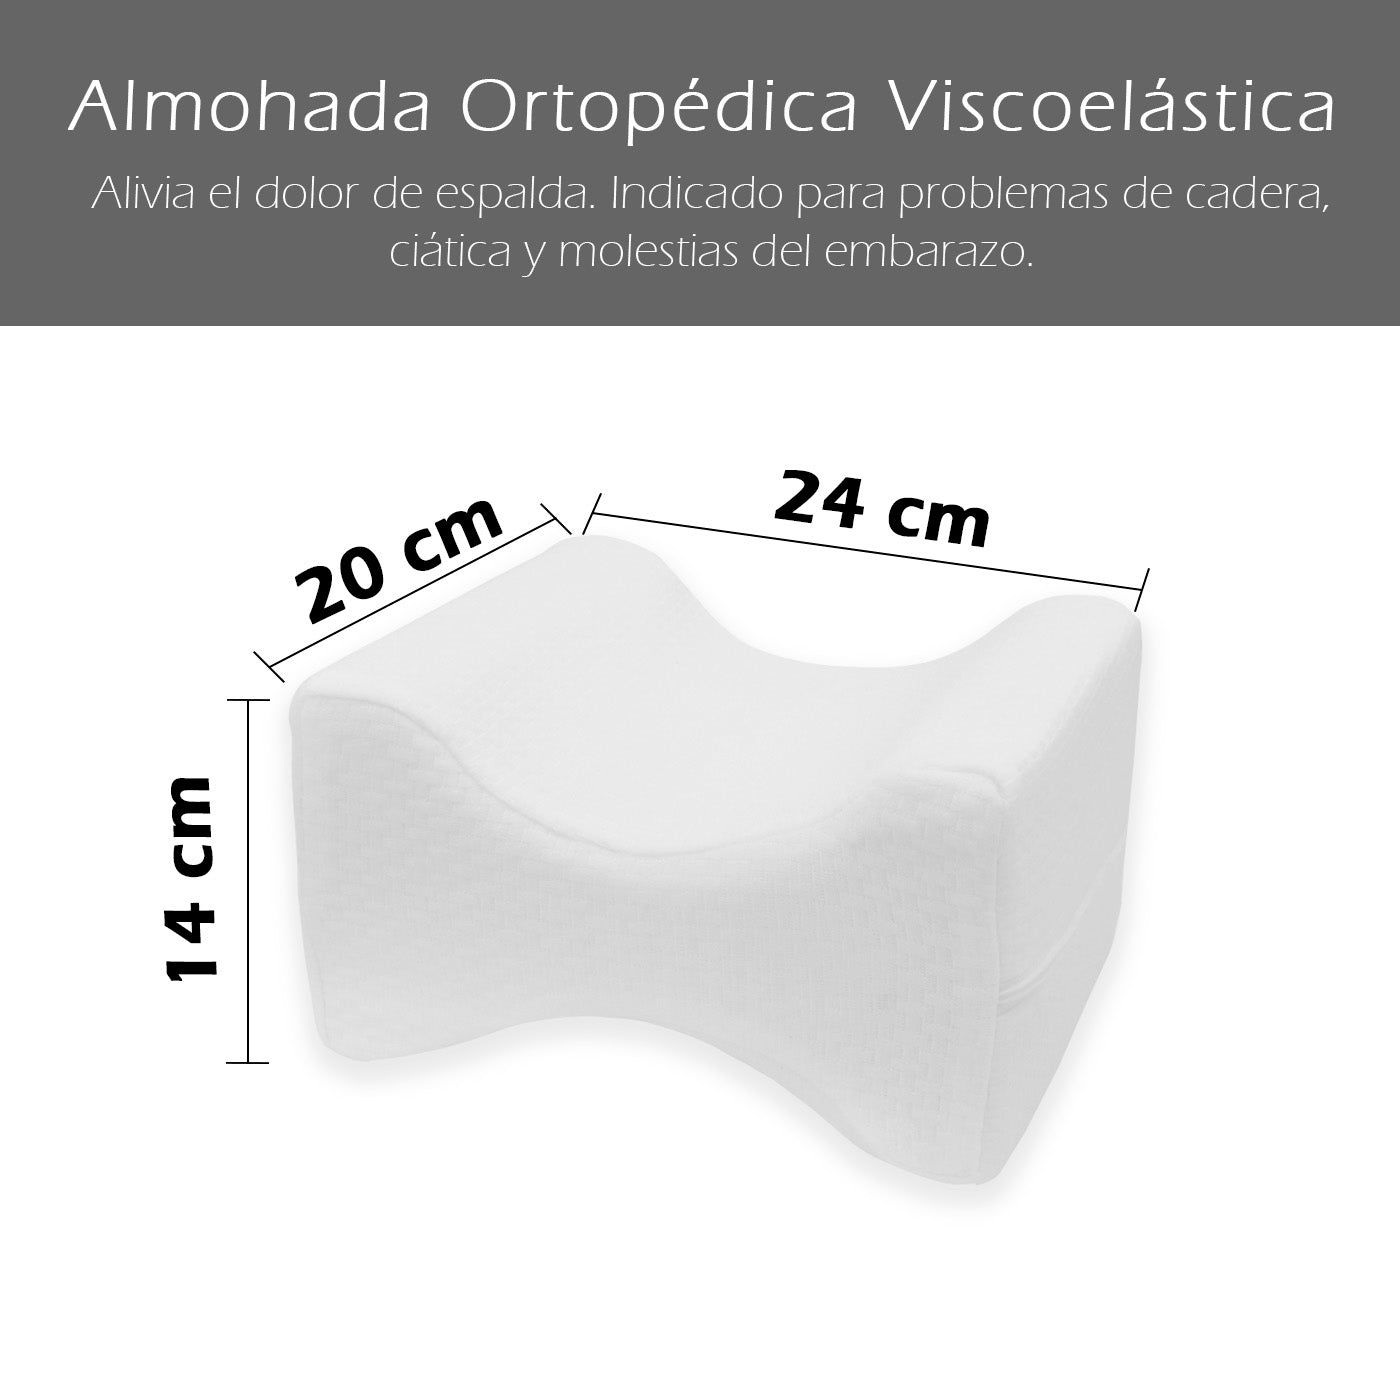 HOME MERCURY- Almohada ortopédica viscoelástica para piernas, Alivia el  Dolor de Espalda y es Ideal para el Problema de Cadera